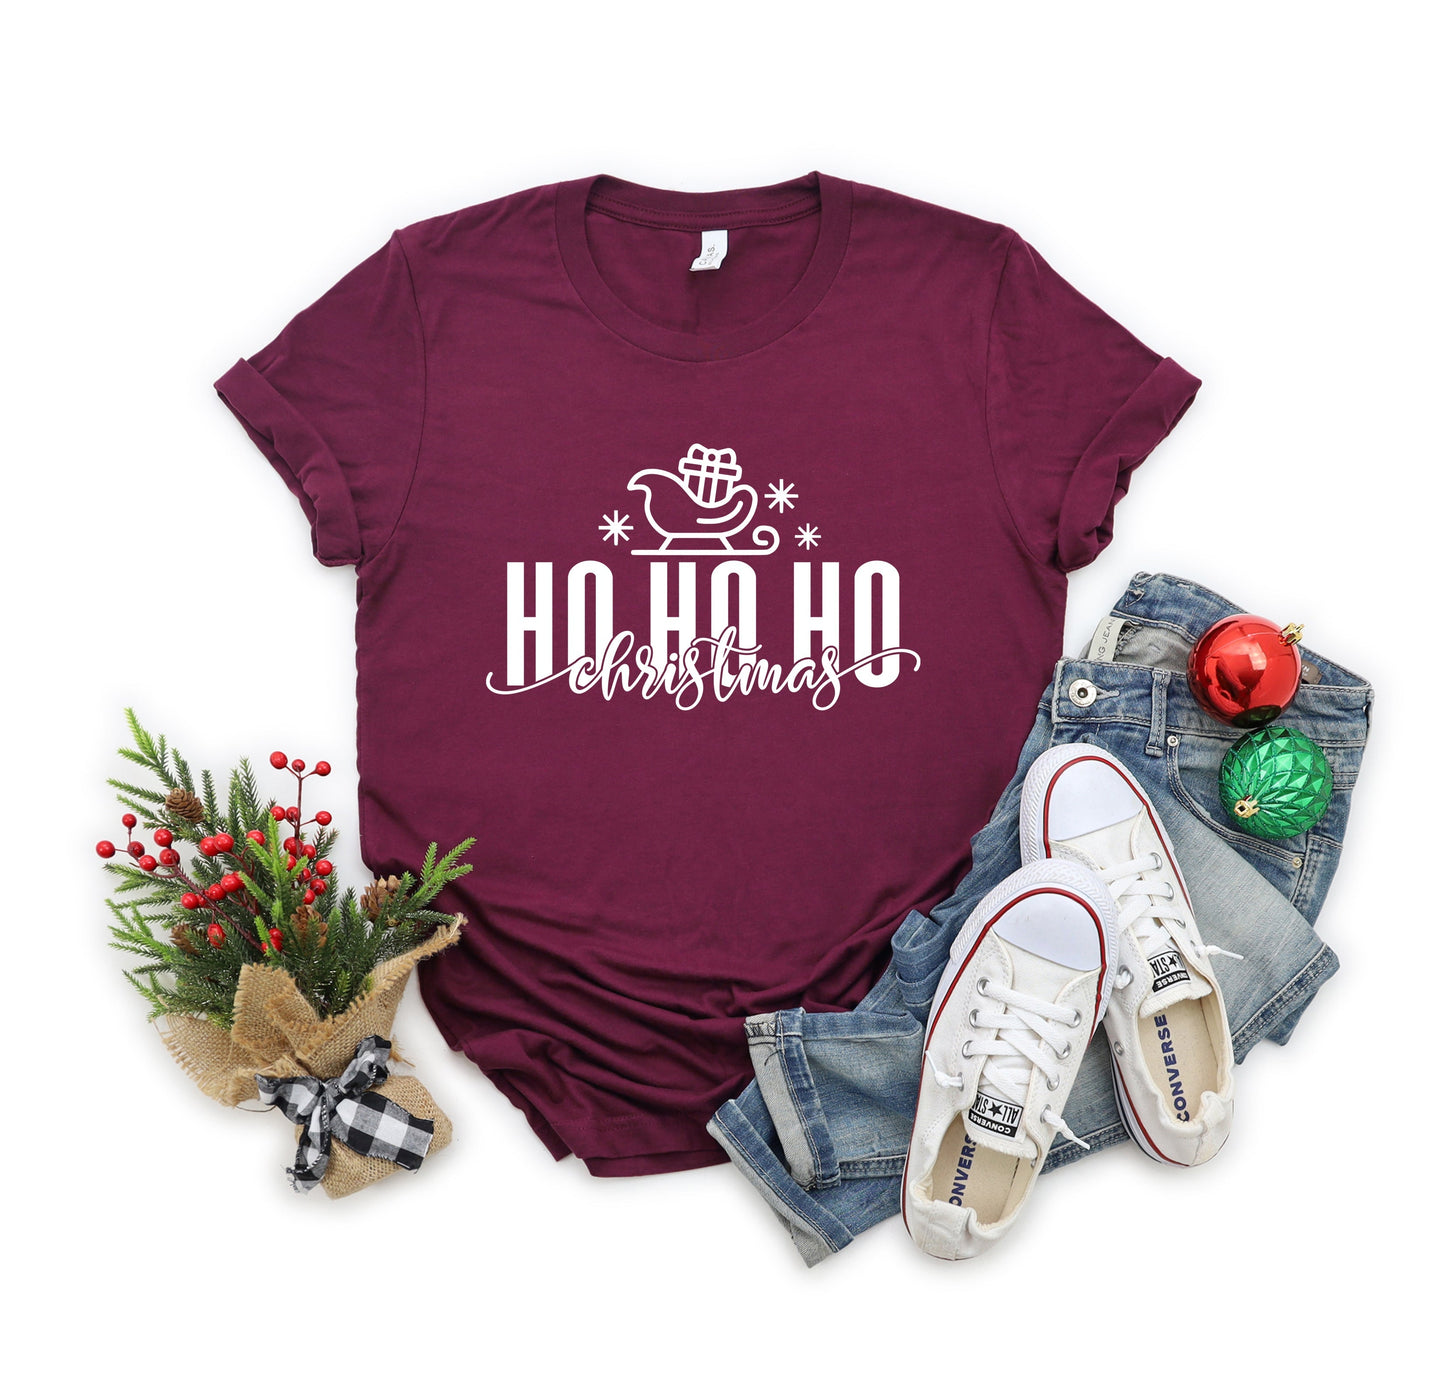 Sleigh Ho Ho Ho | Short Sleeve Crew Neck